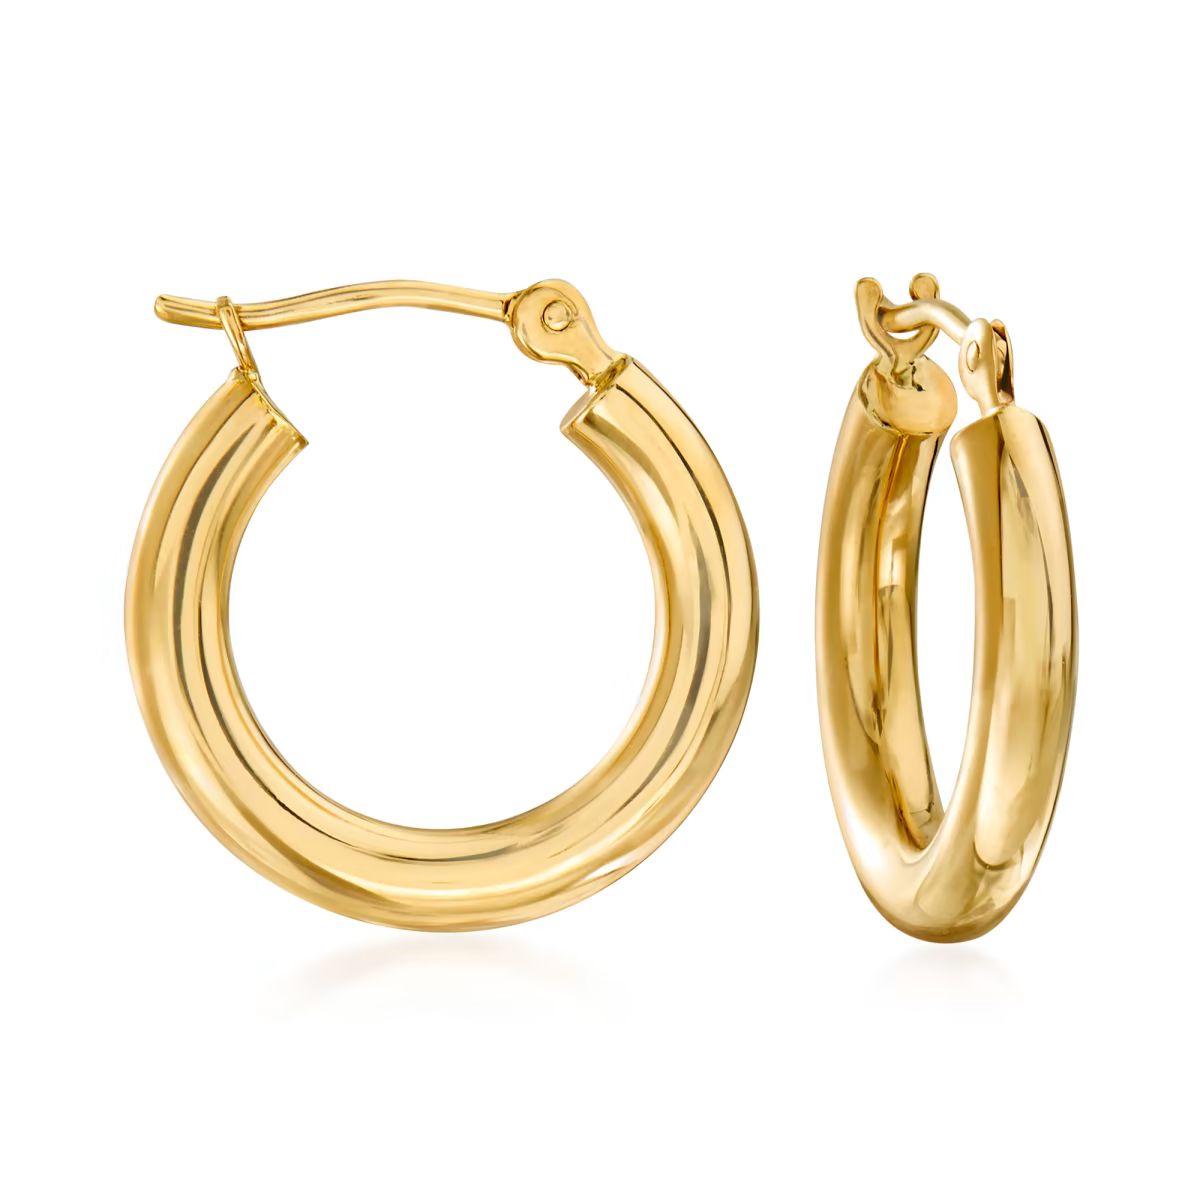 2.5mm 14kt Yellow Gold Hoop Earrings. 1/2" | Ross-Simons